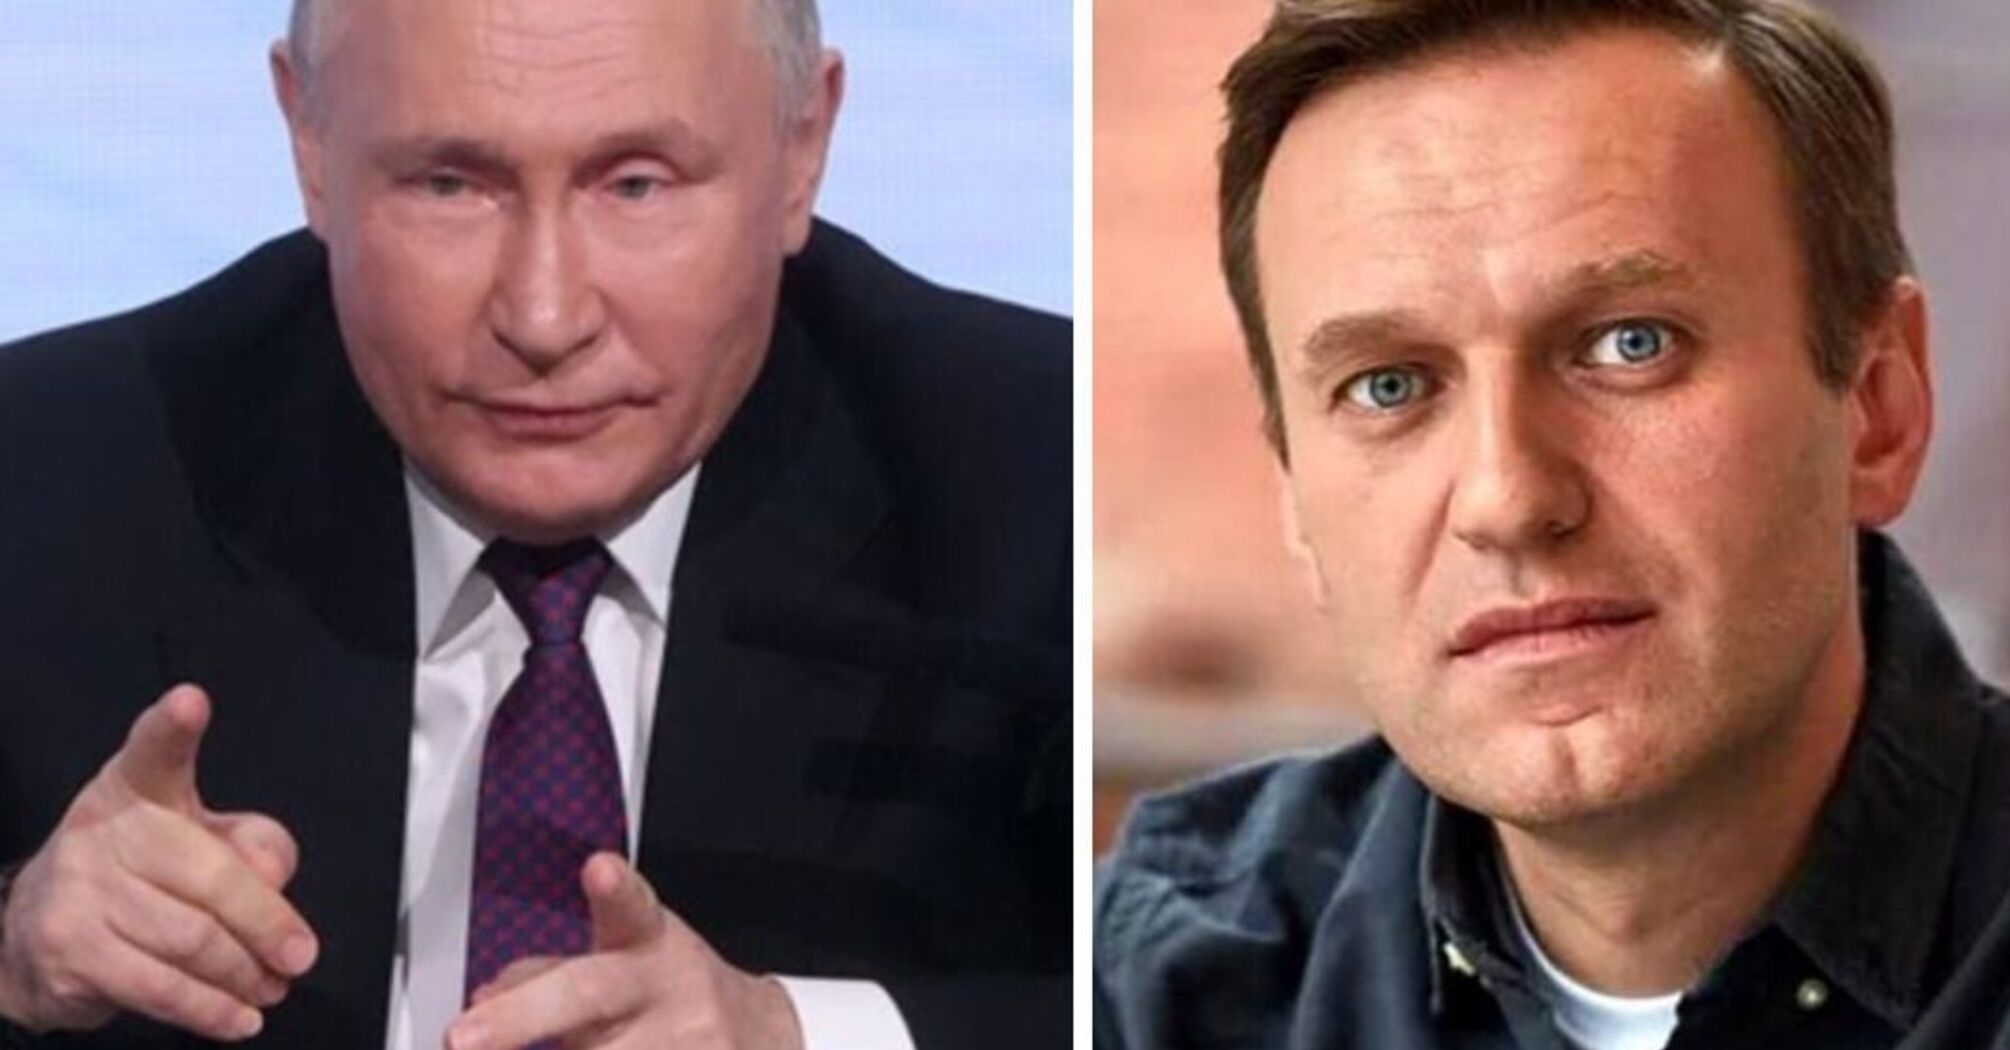 Російська влада боялася Навального за життя і продовжує боятися після смерті